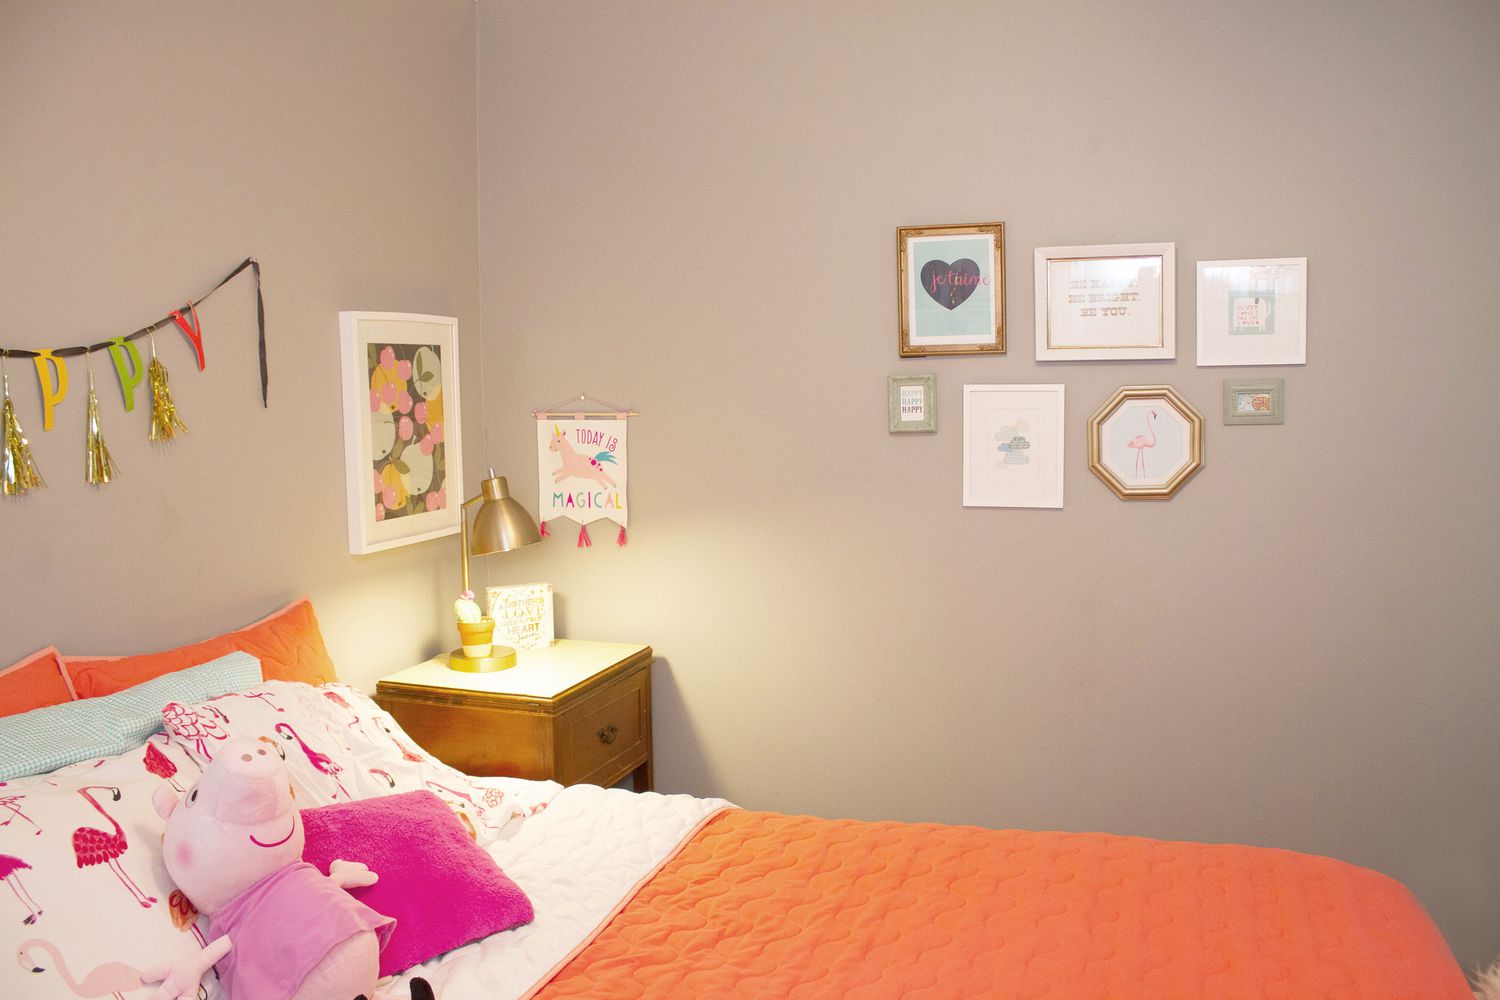 Pequeñas obras de arte en marcos de diversas formas colgadas en la pared del dormitorio